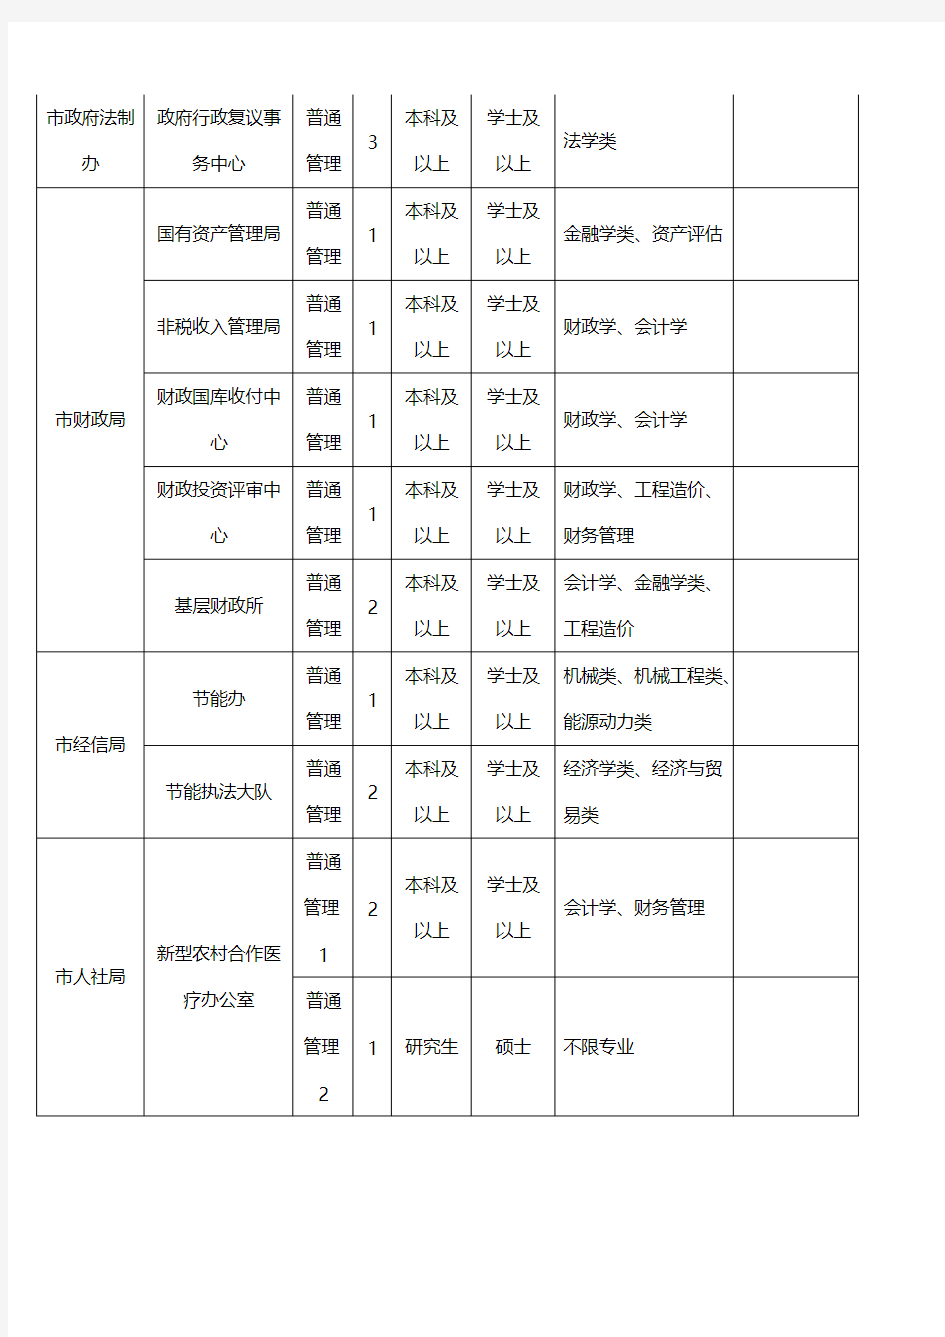 [VIP专享]2014年枣庄滕州事业单位考试招考职位表